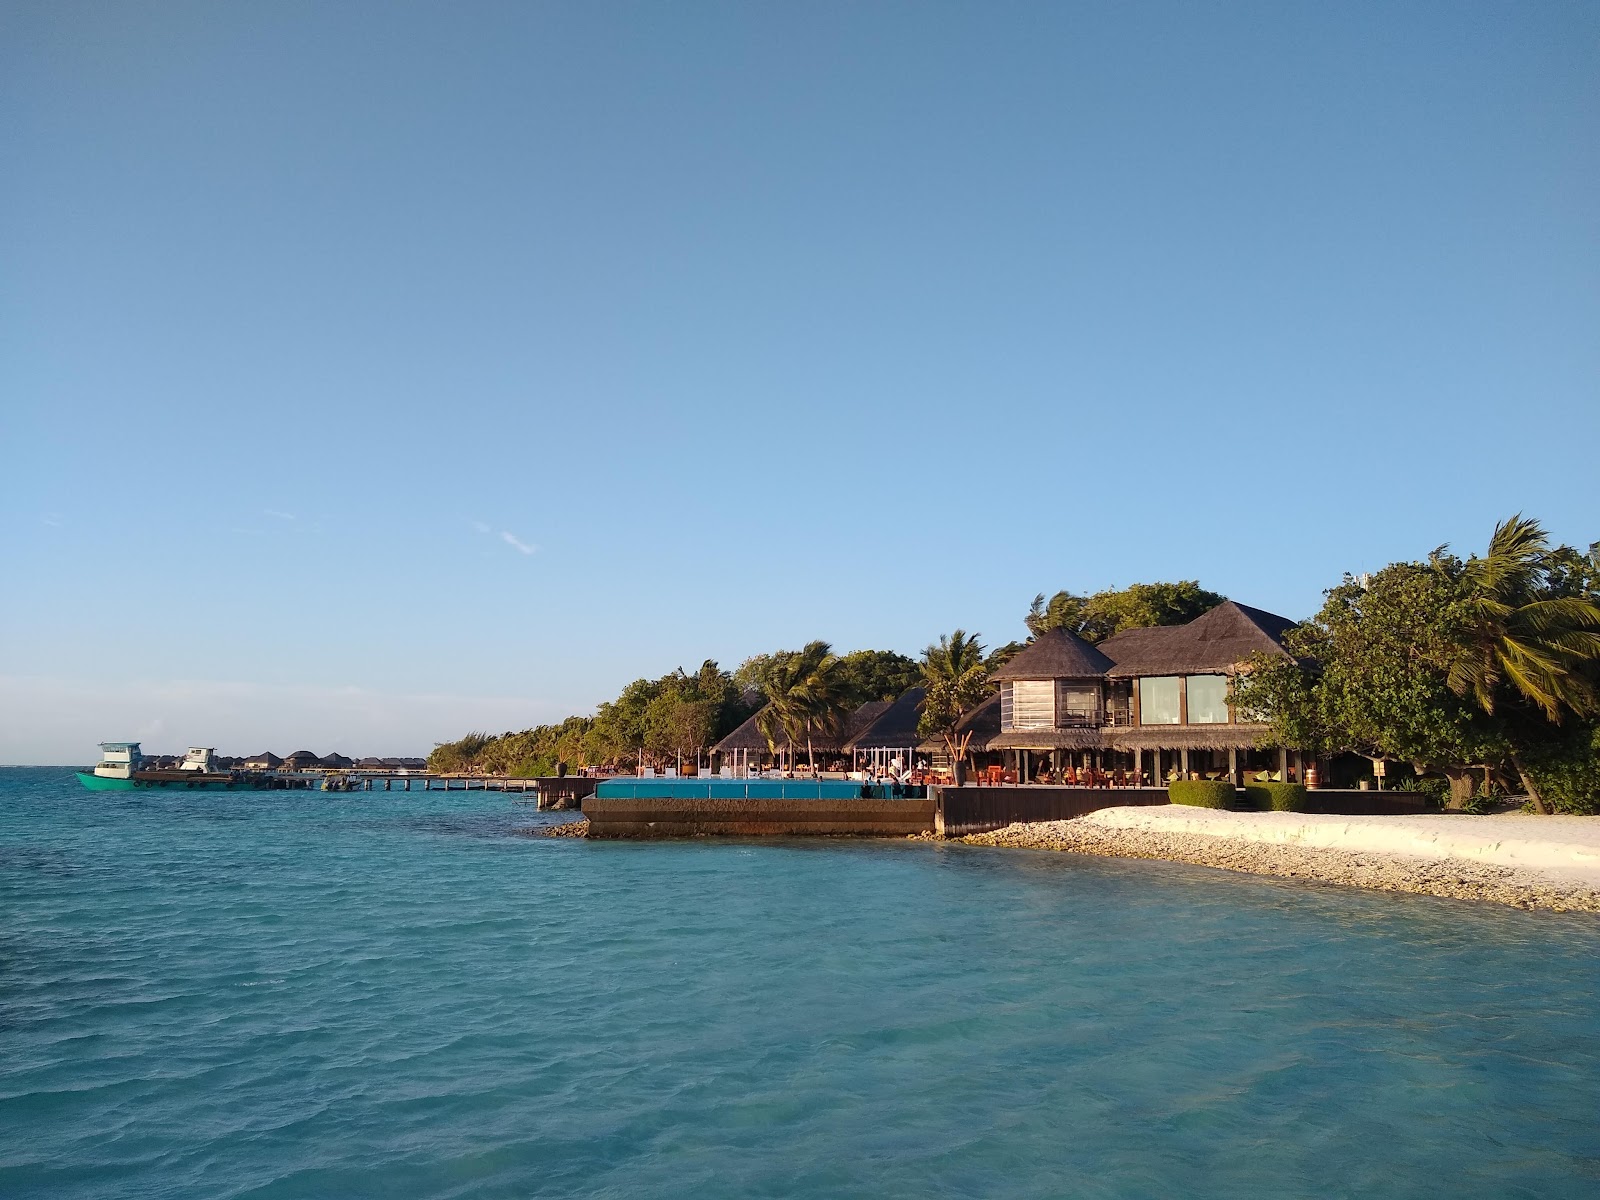 Coco Bodu Hithi Resort'in fotoğrafı - rahatlamayı sevenler arasında popüler bir yer